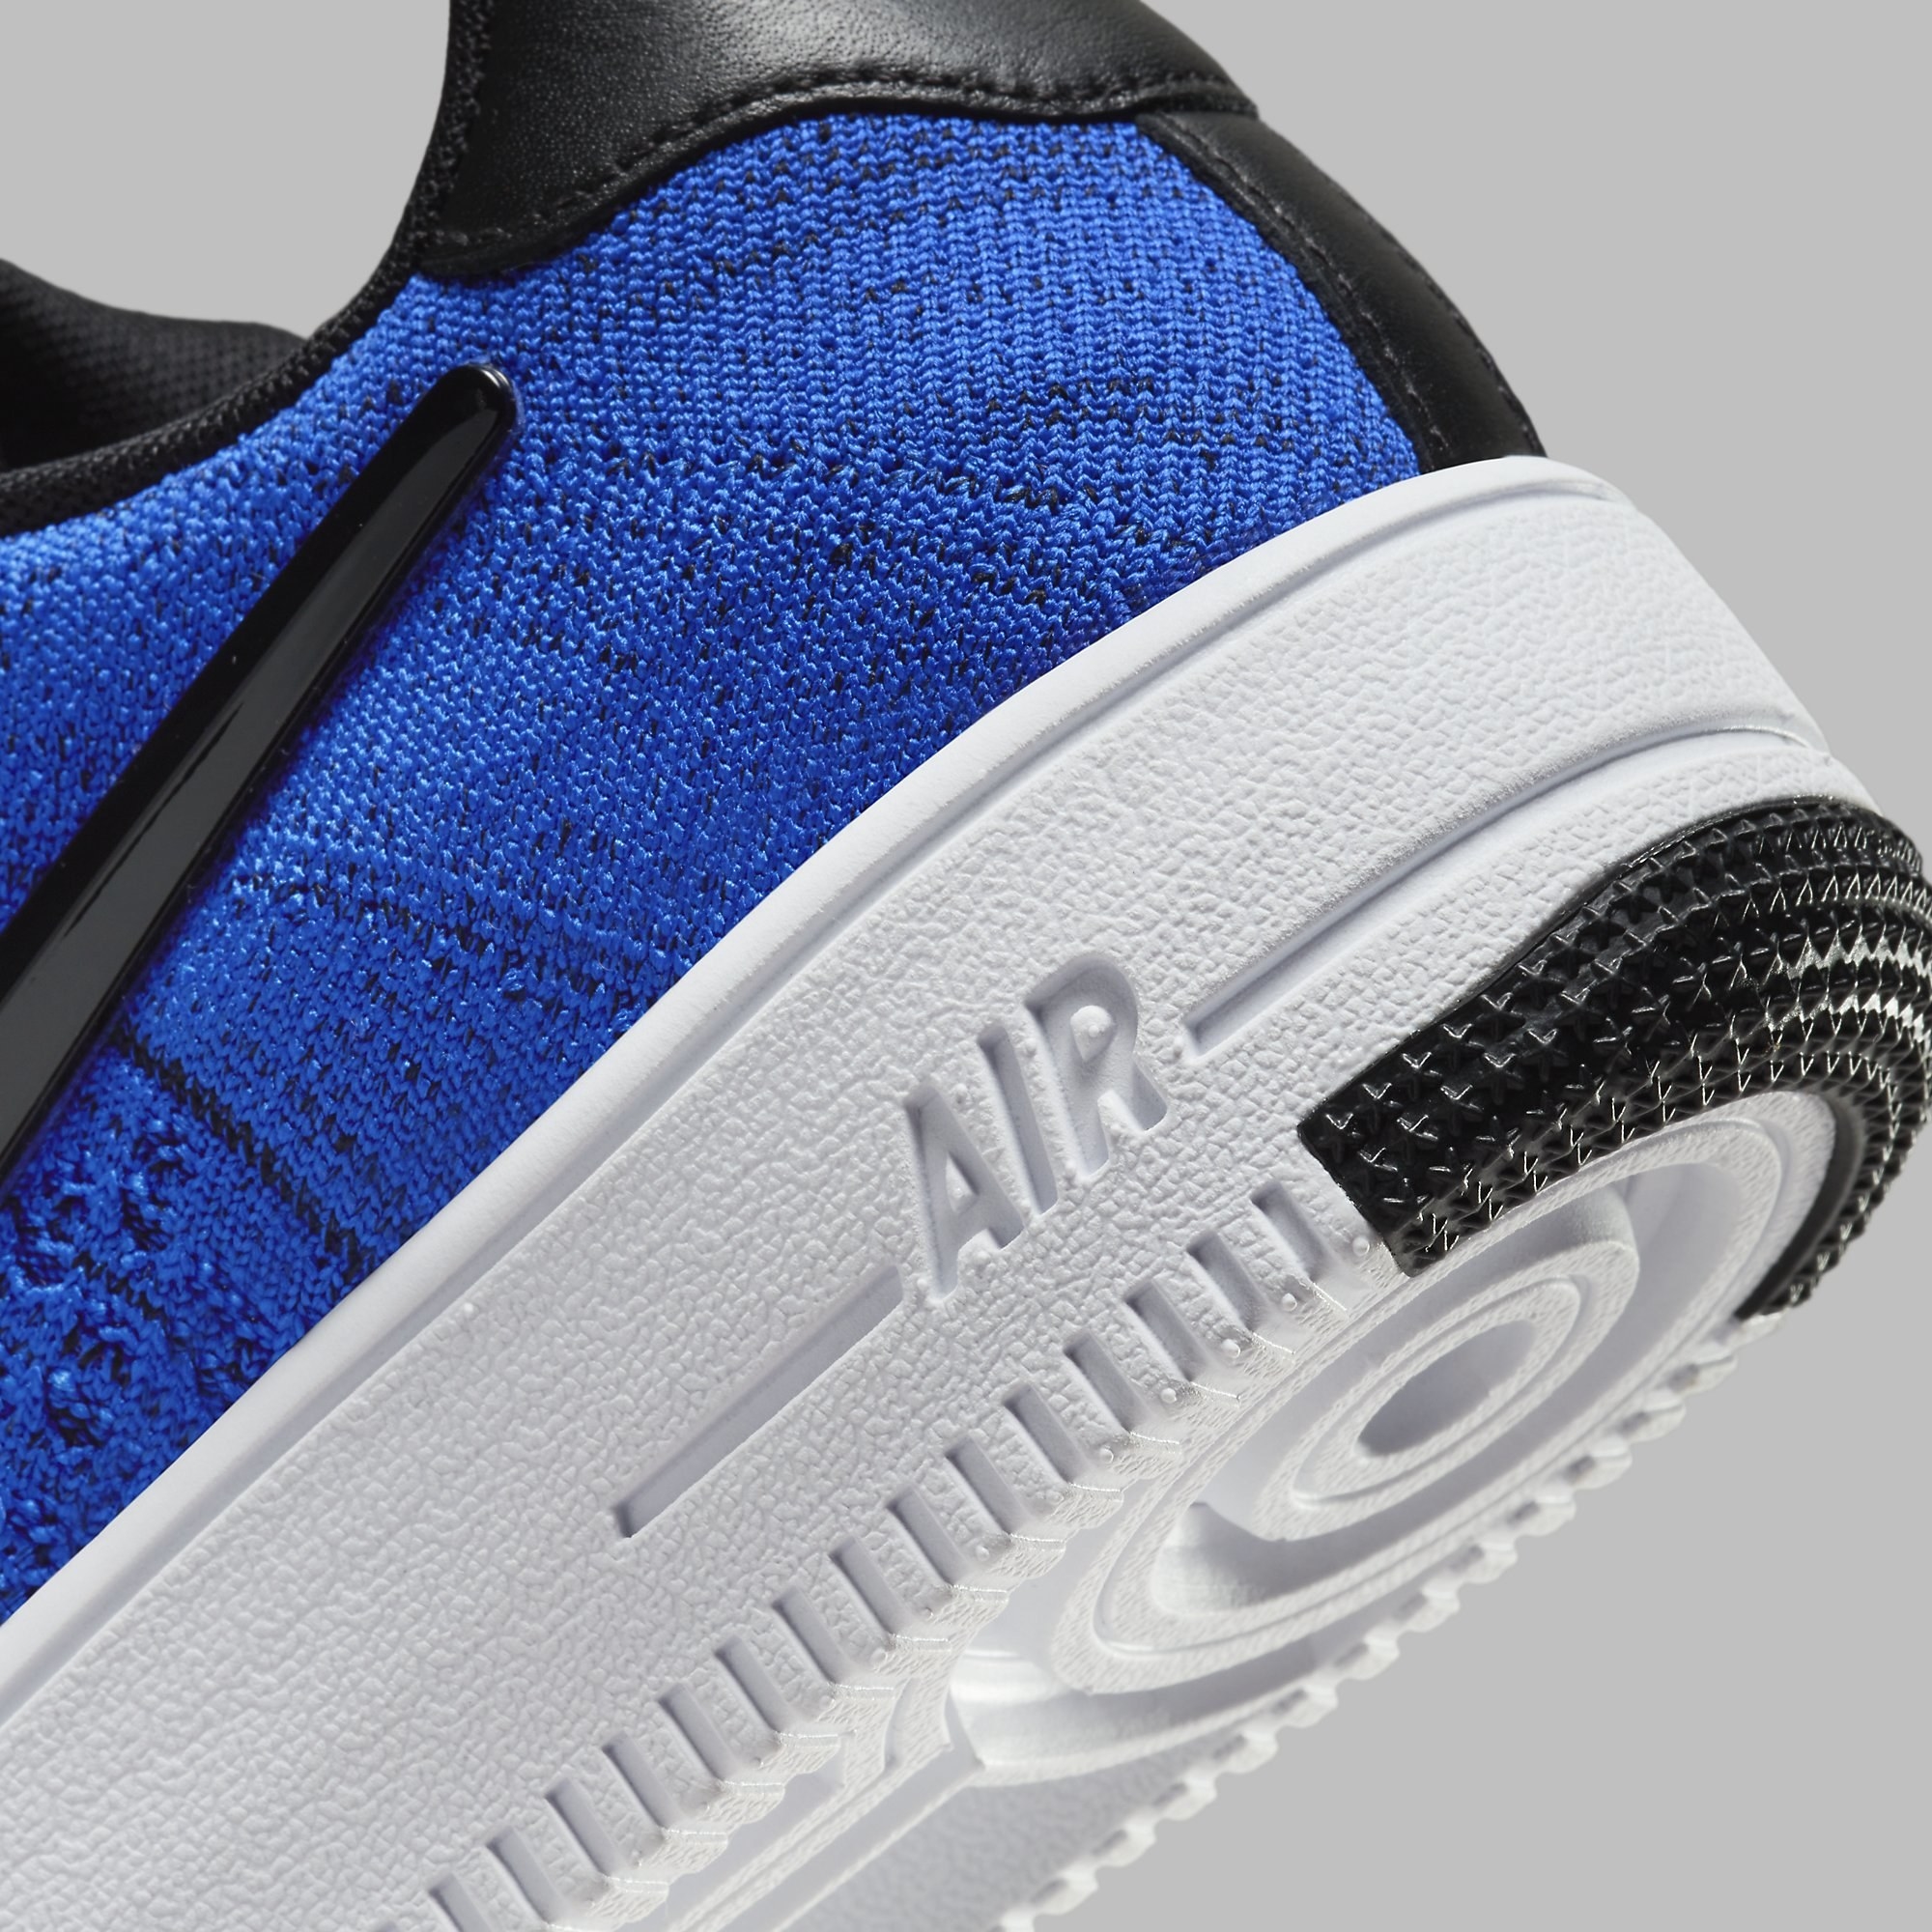 Robert Kraft x Nike Air Force 1 Ultra Flyknit Low RKK Patriots Release Date FV4079-400 Heel Detail